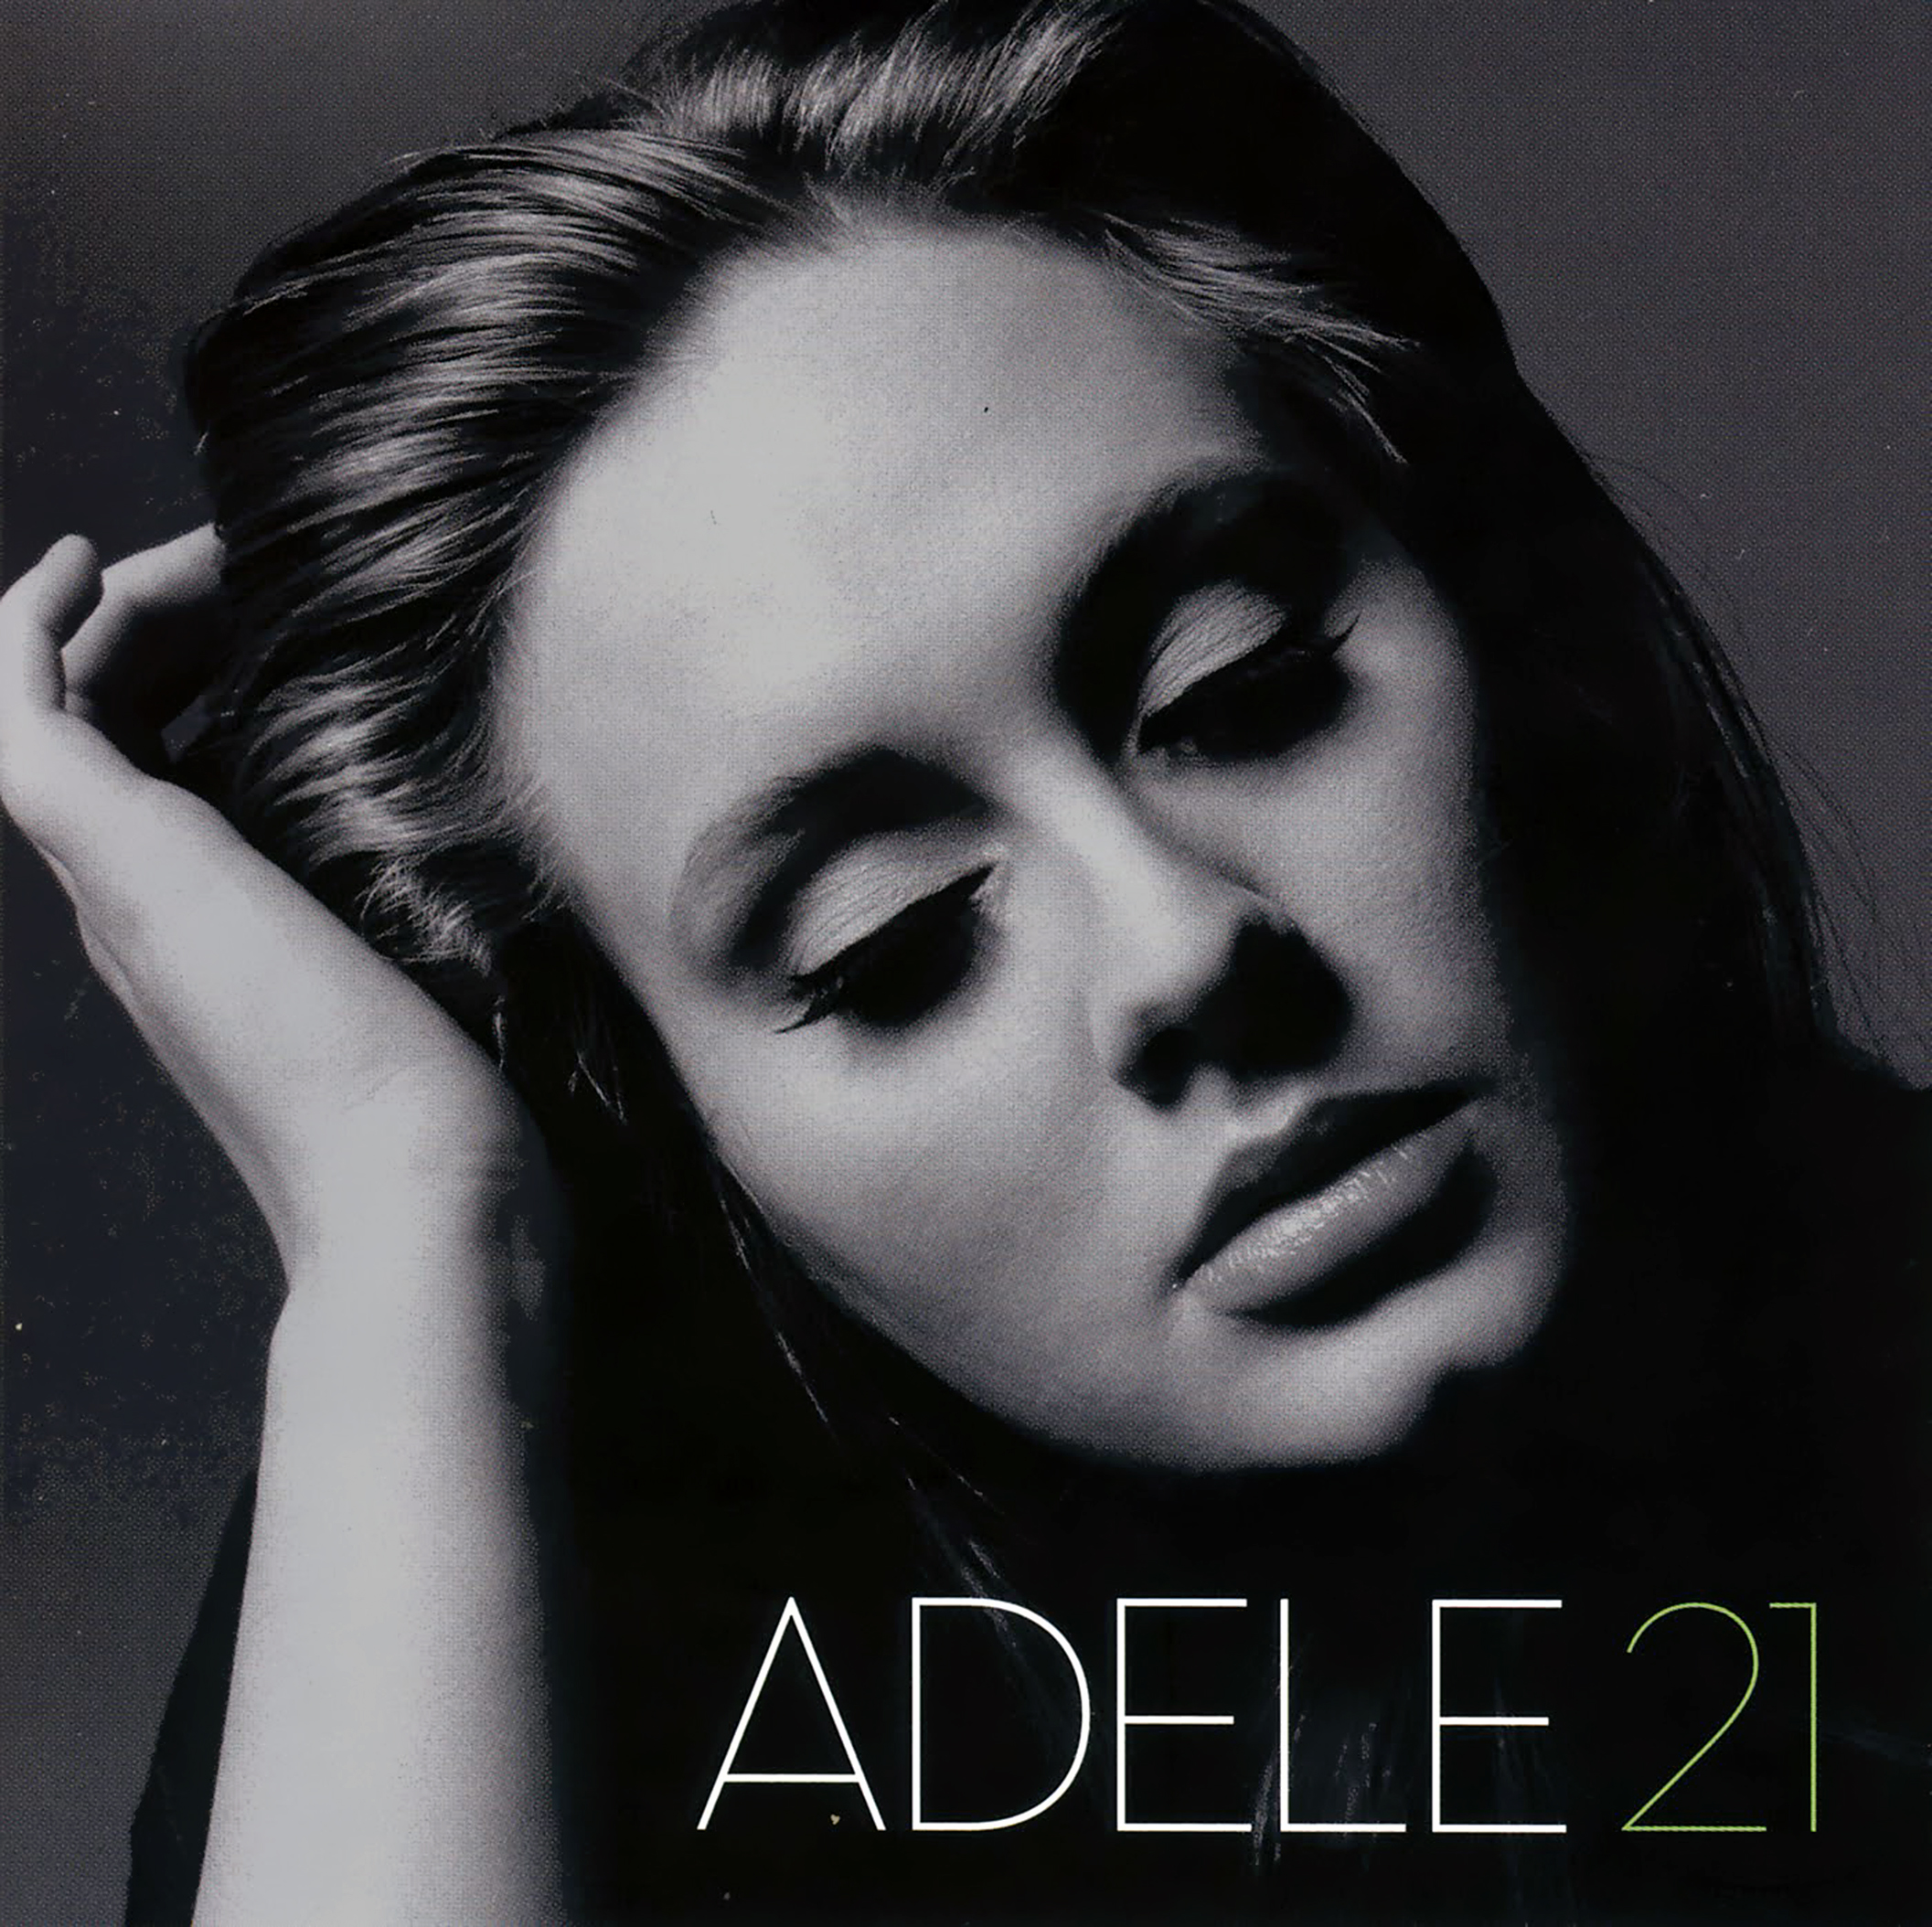 (CD) - 21 Adele -